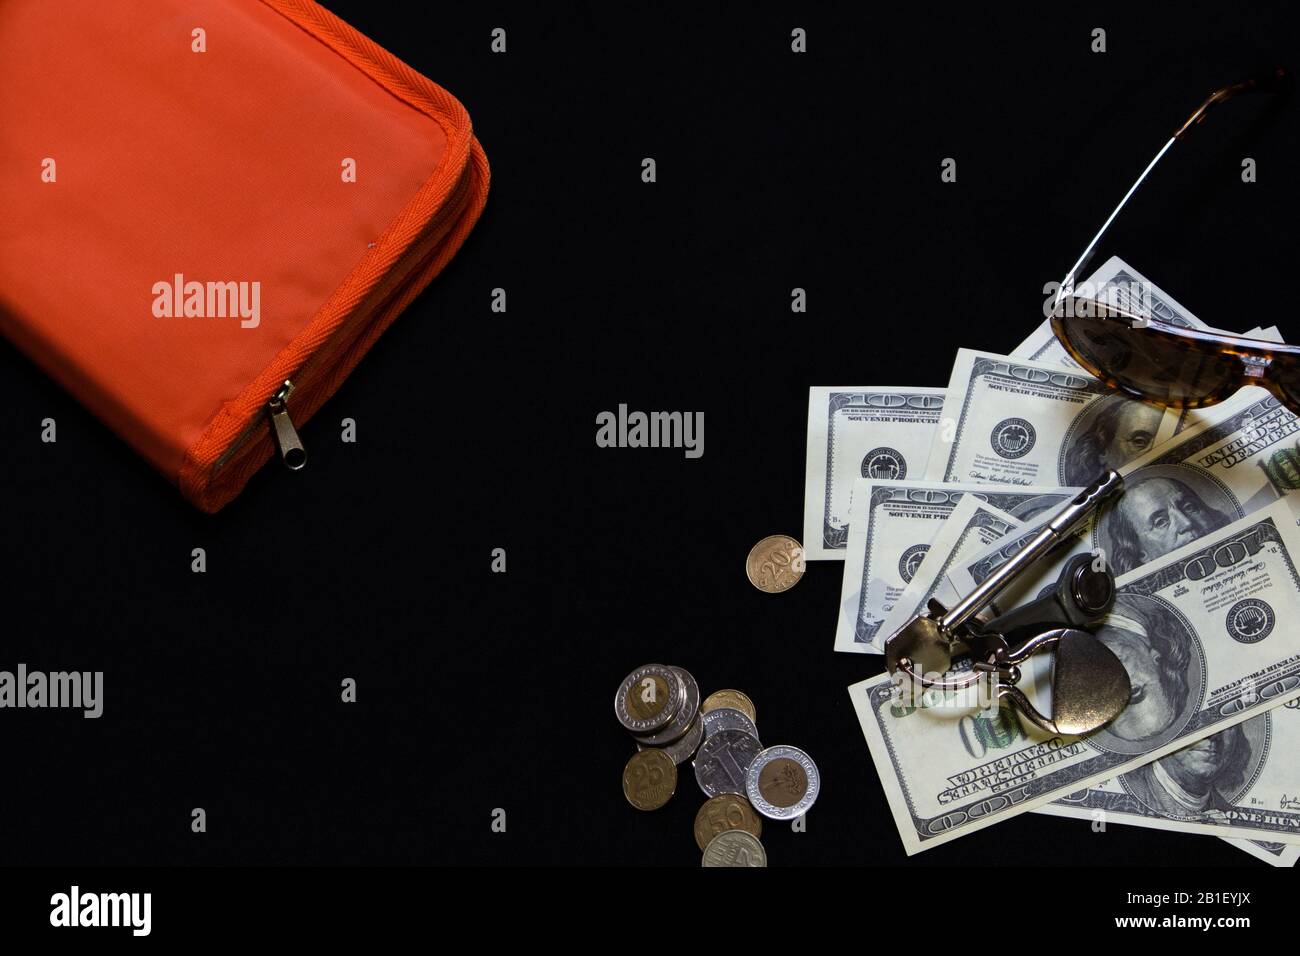 Stillleben mit verstreuten Hundert-Dollar-Banknoten, Hausschlüsseln, verschiedenen Münzen, Sonnenbrillen und orangefarbenem Dokumentenfach auf schwarzem Hintergrund Stockfoto